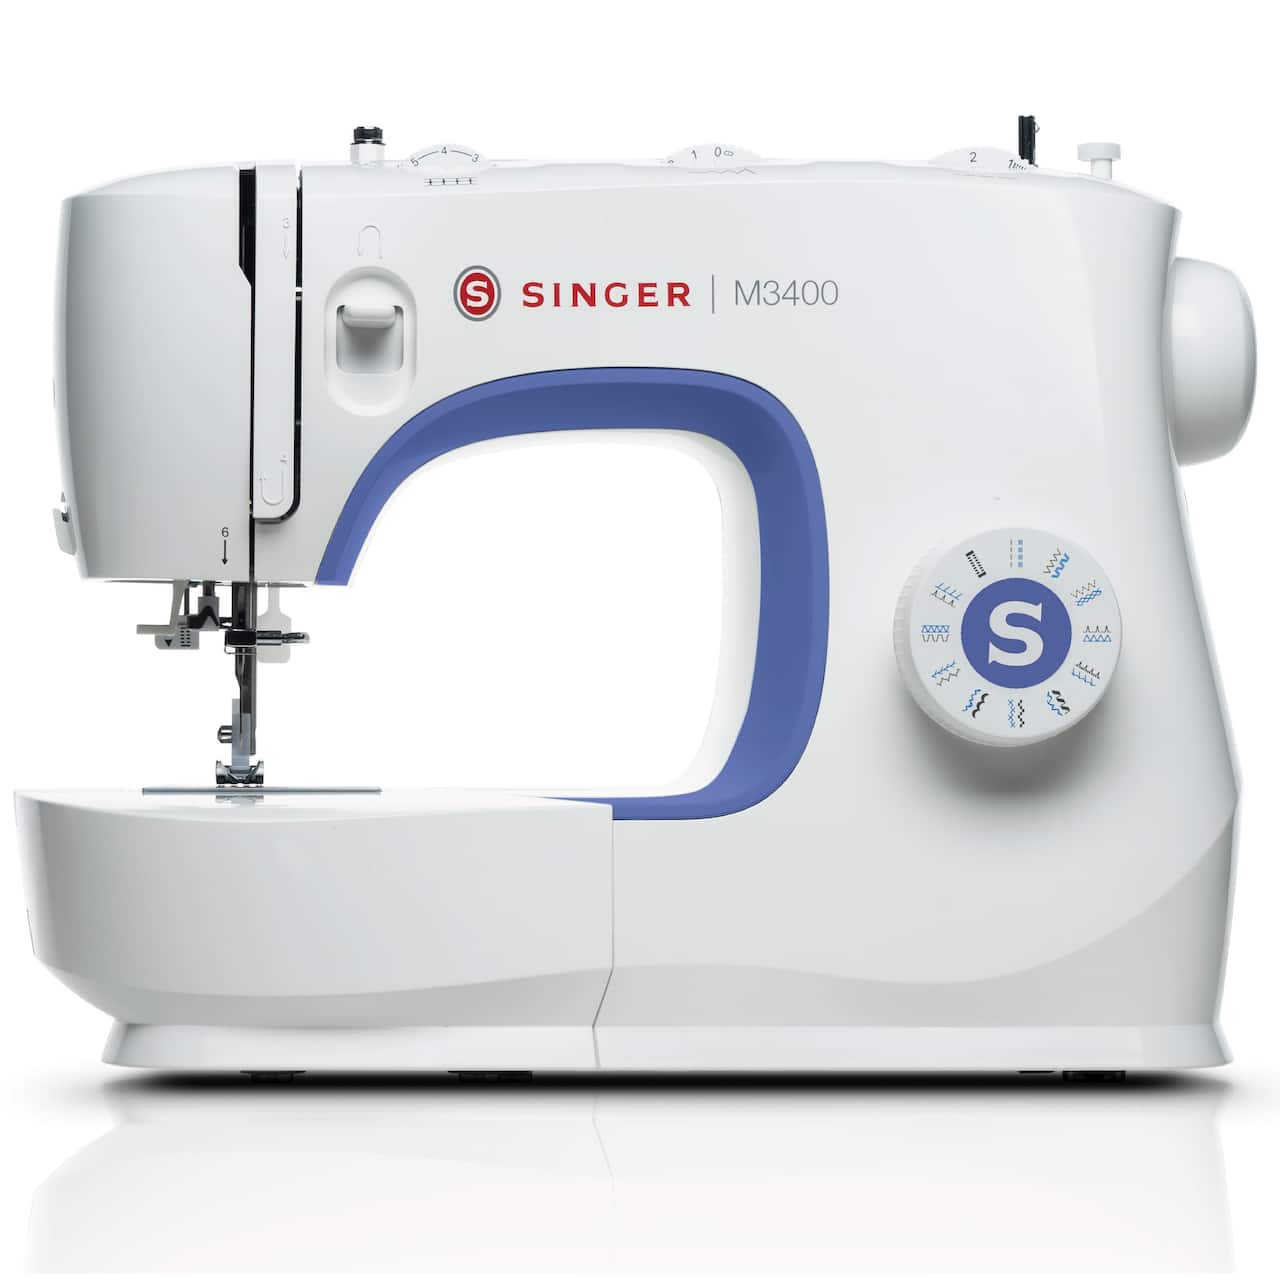 SINGER&#xAE; M3400 Sewing Machine